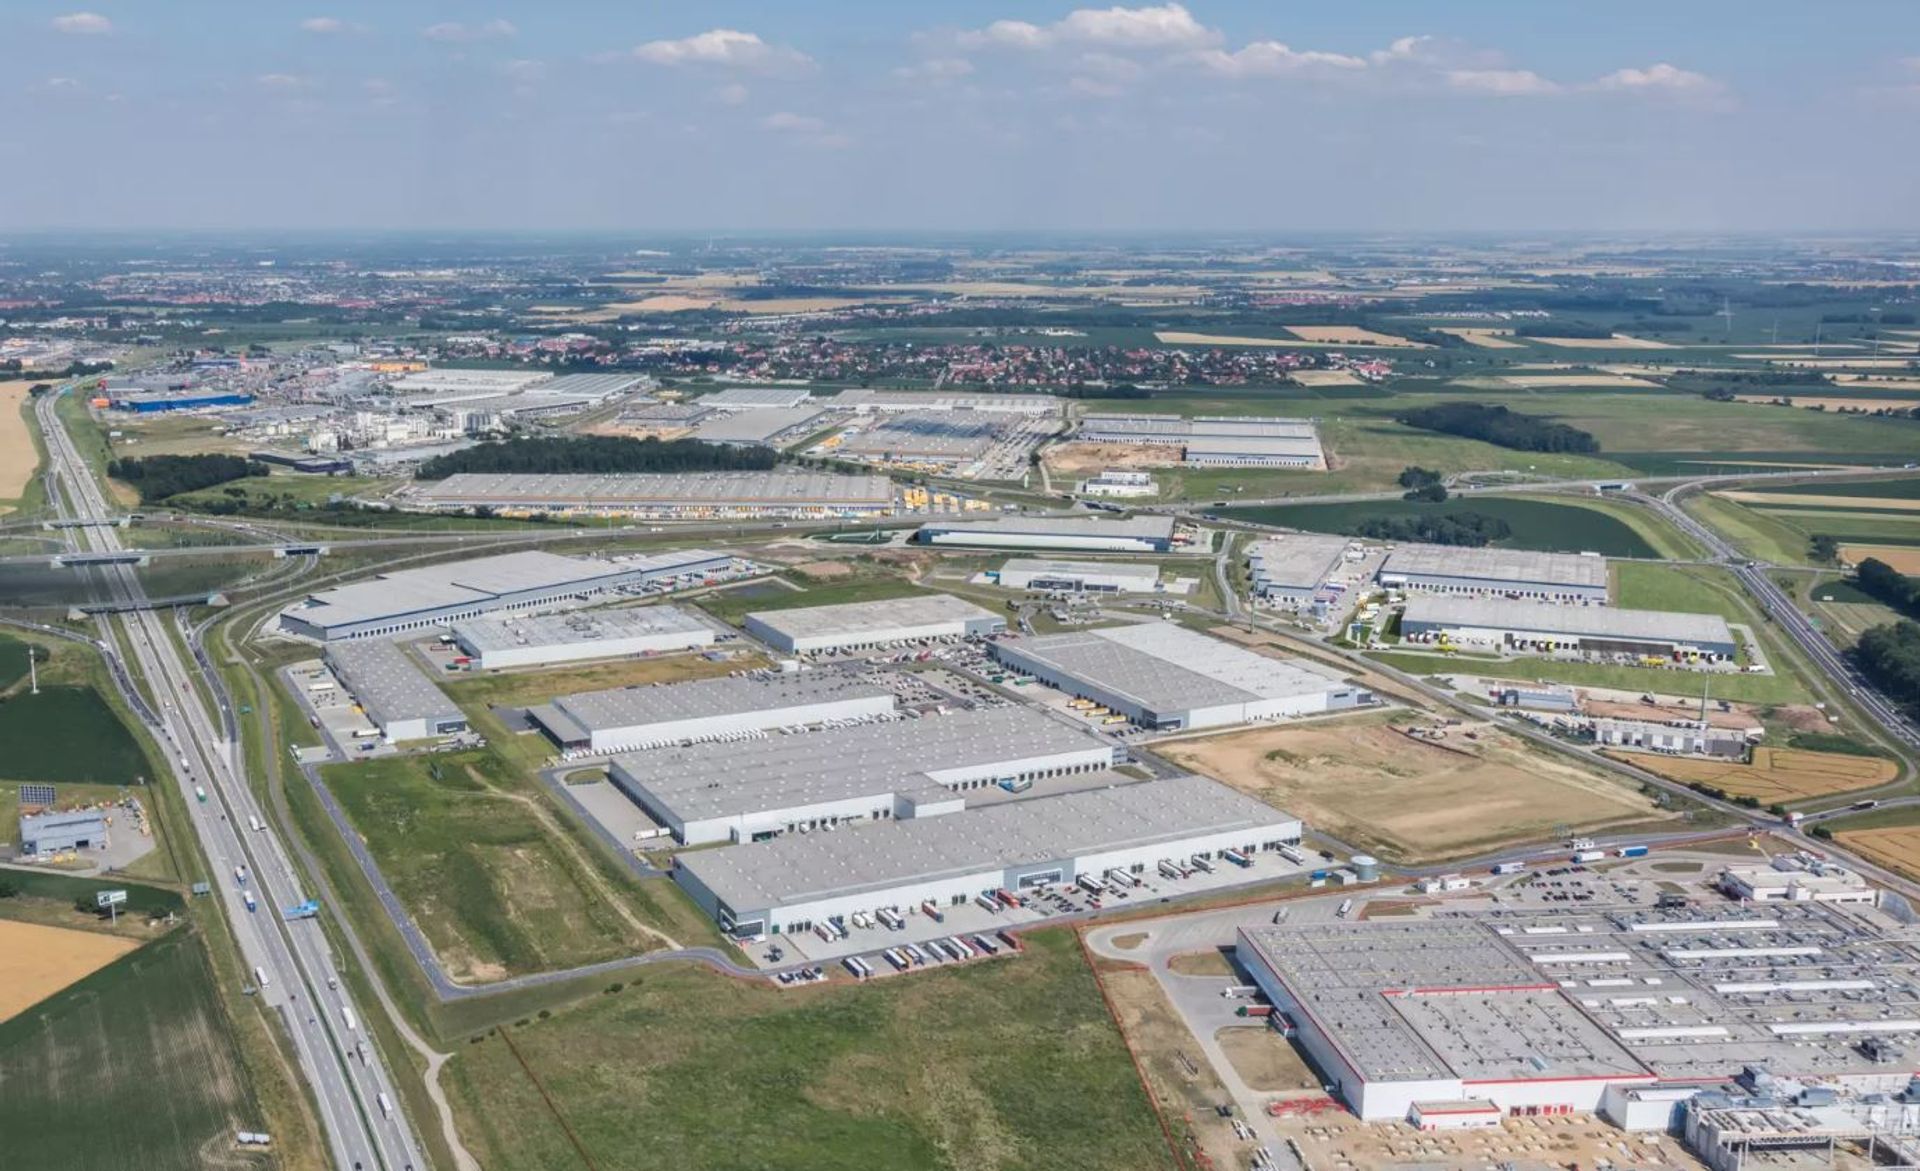 Panattoni sfinalizowało sprzedaż dwóch parków przemysłowych w regionie Wrocławia